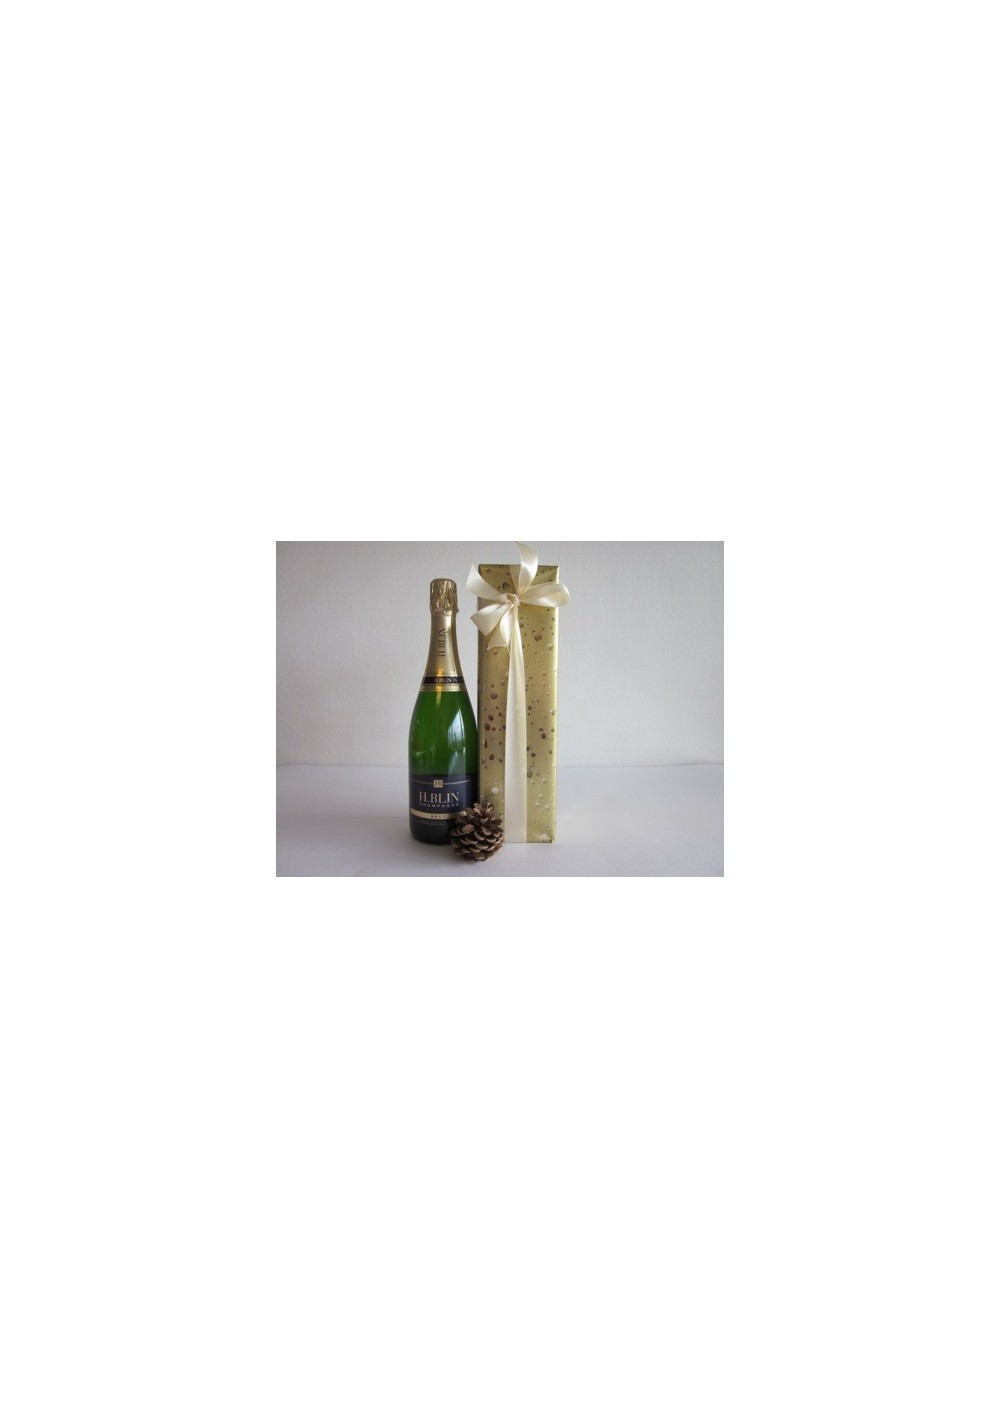 Champagne H. BLIN - Brut Réserve 